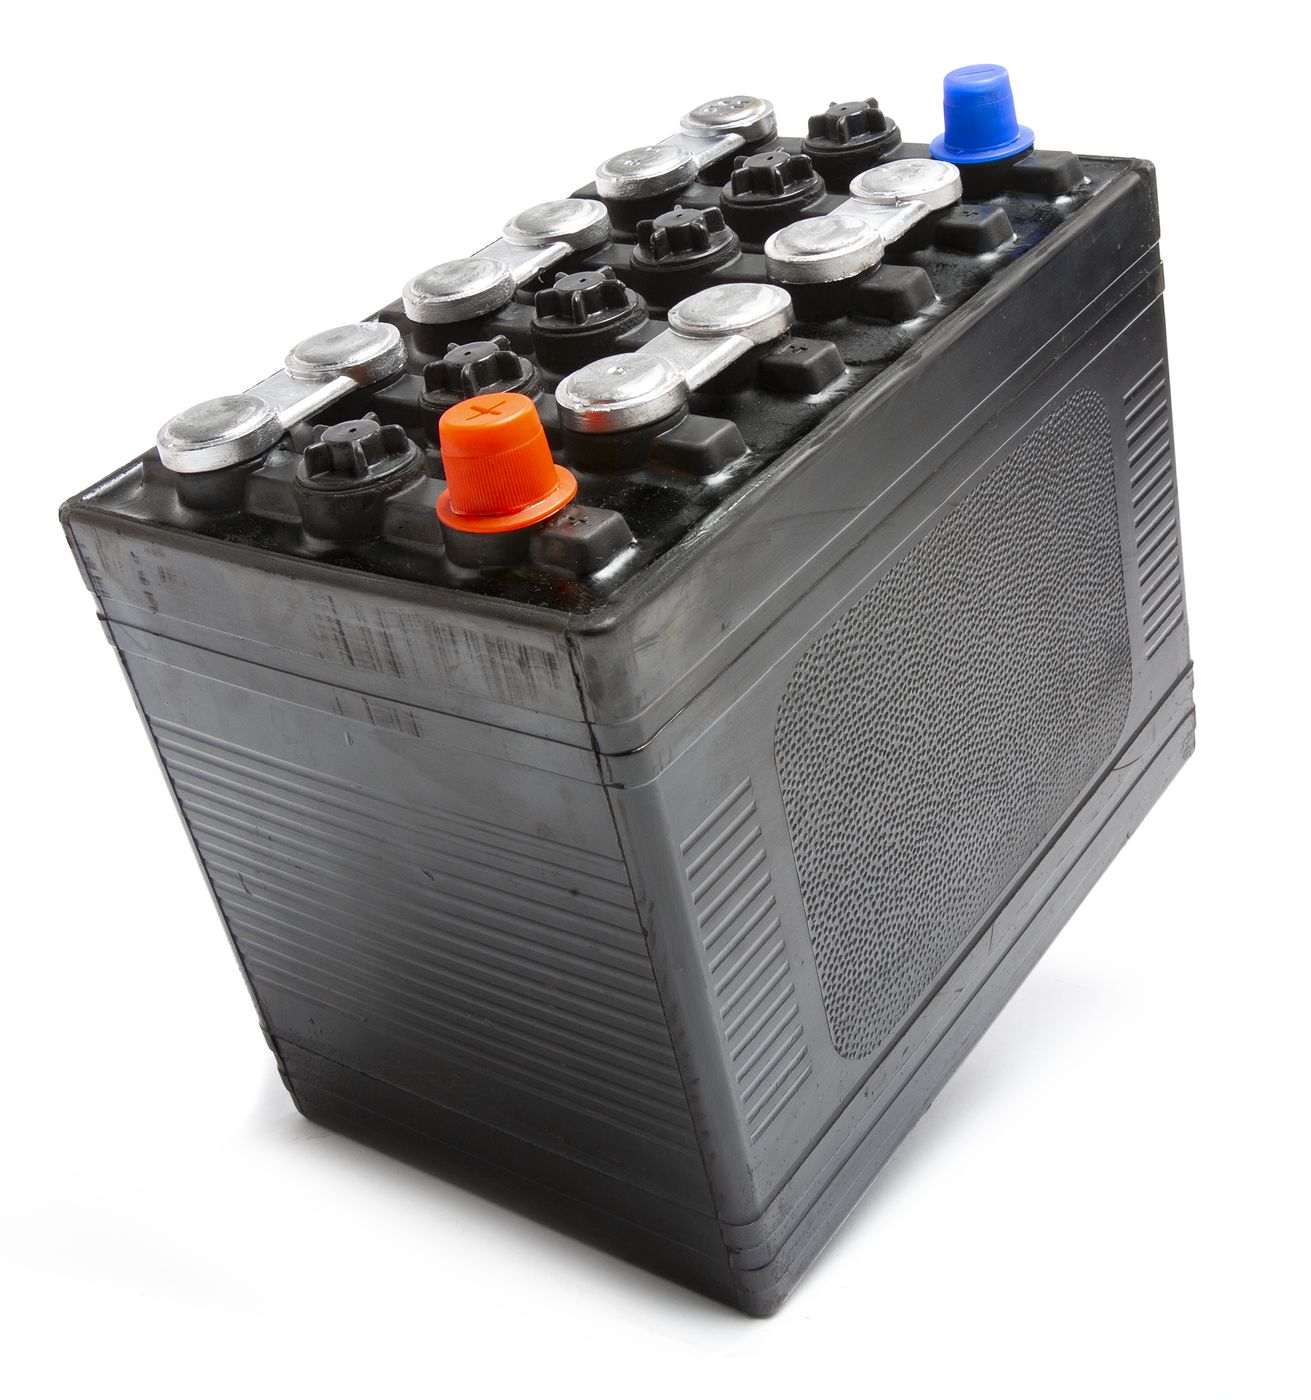 Starterbatterie
Battery
Batterie
Akumulator
Accu
Batería de arr